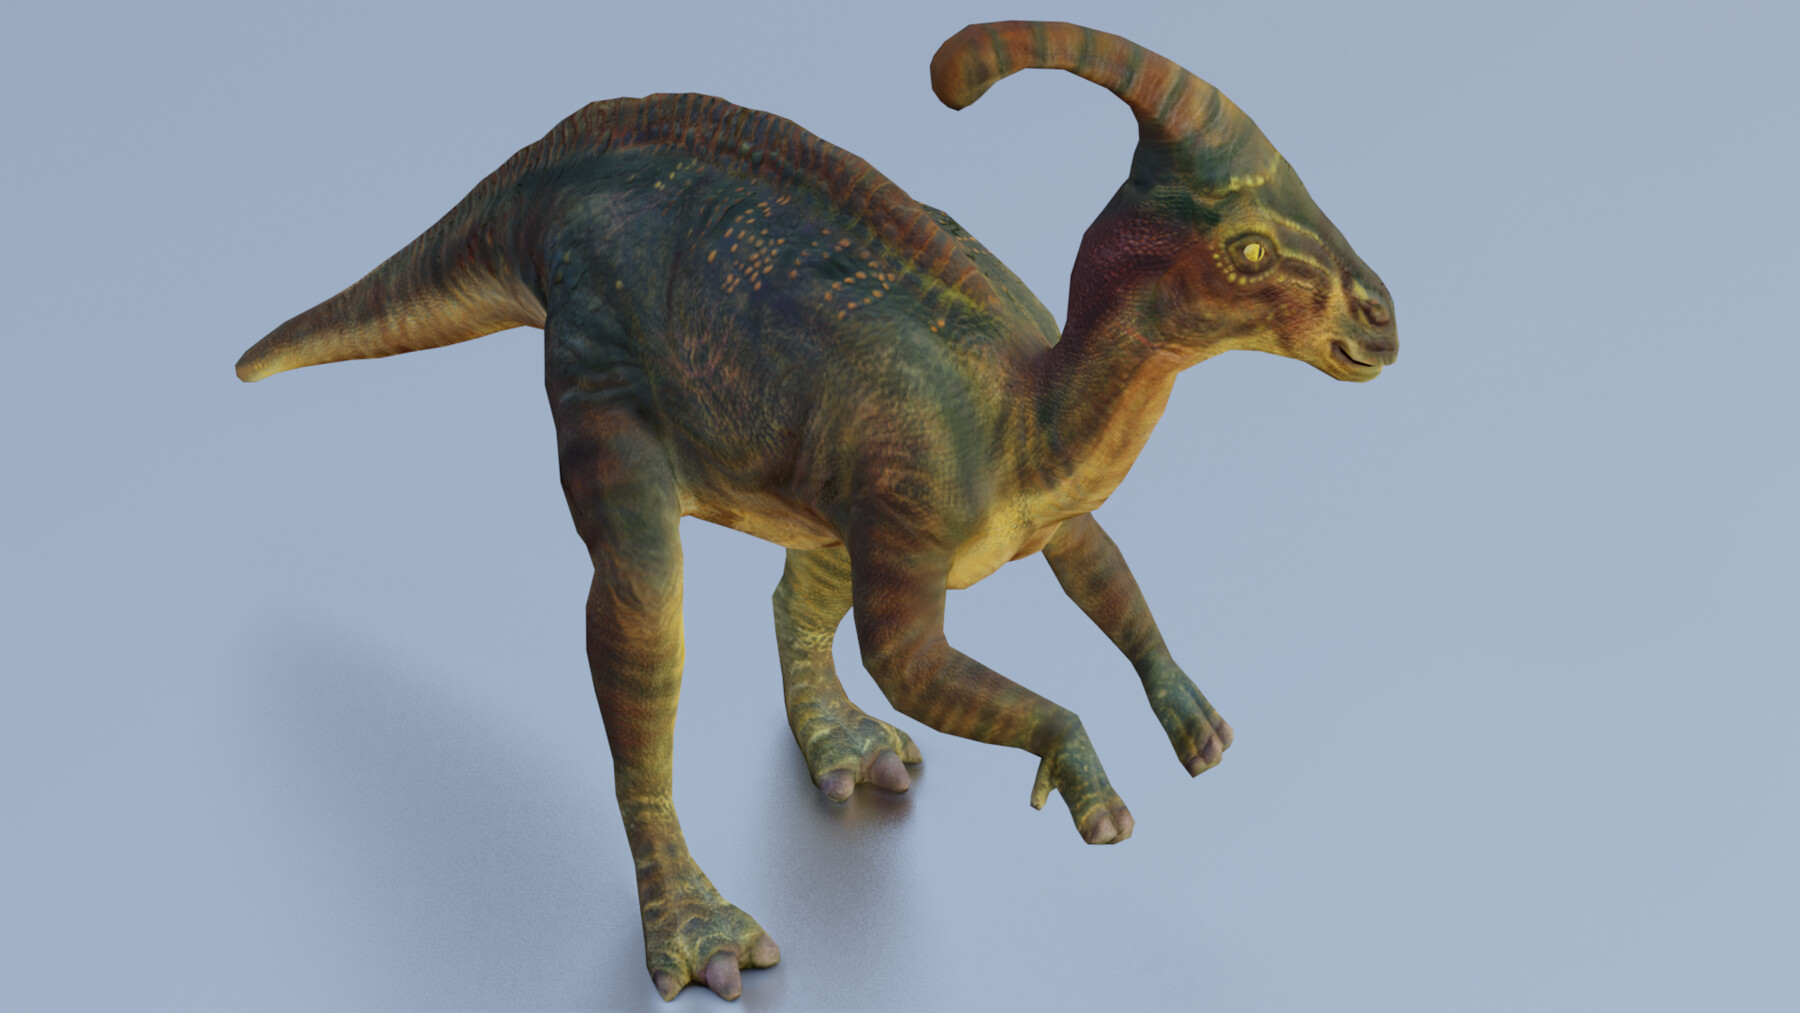 Dinosaur game model | 3D model